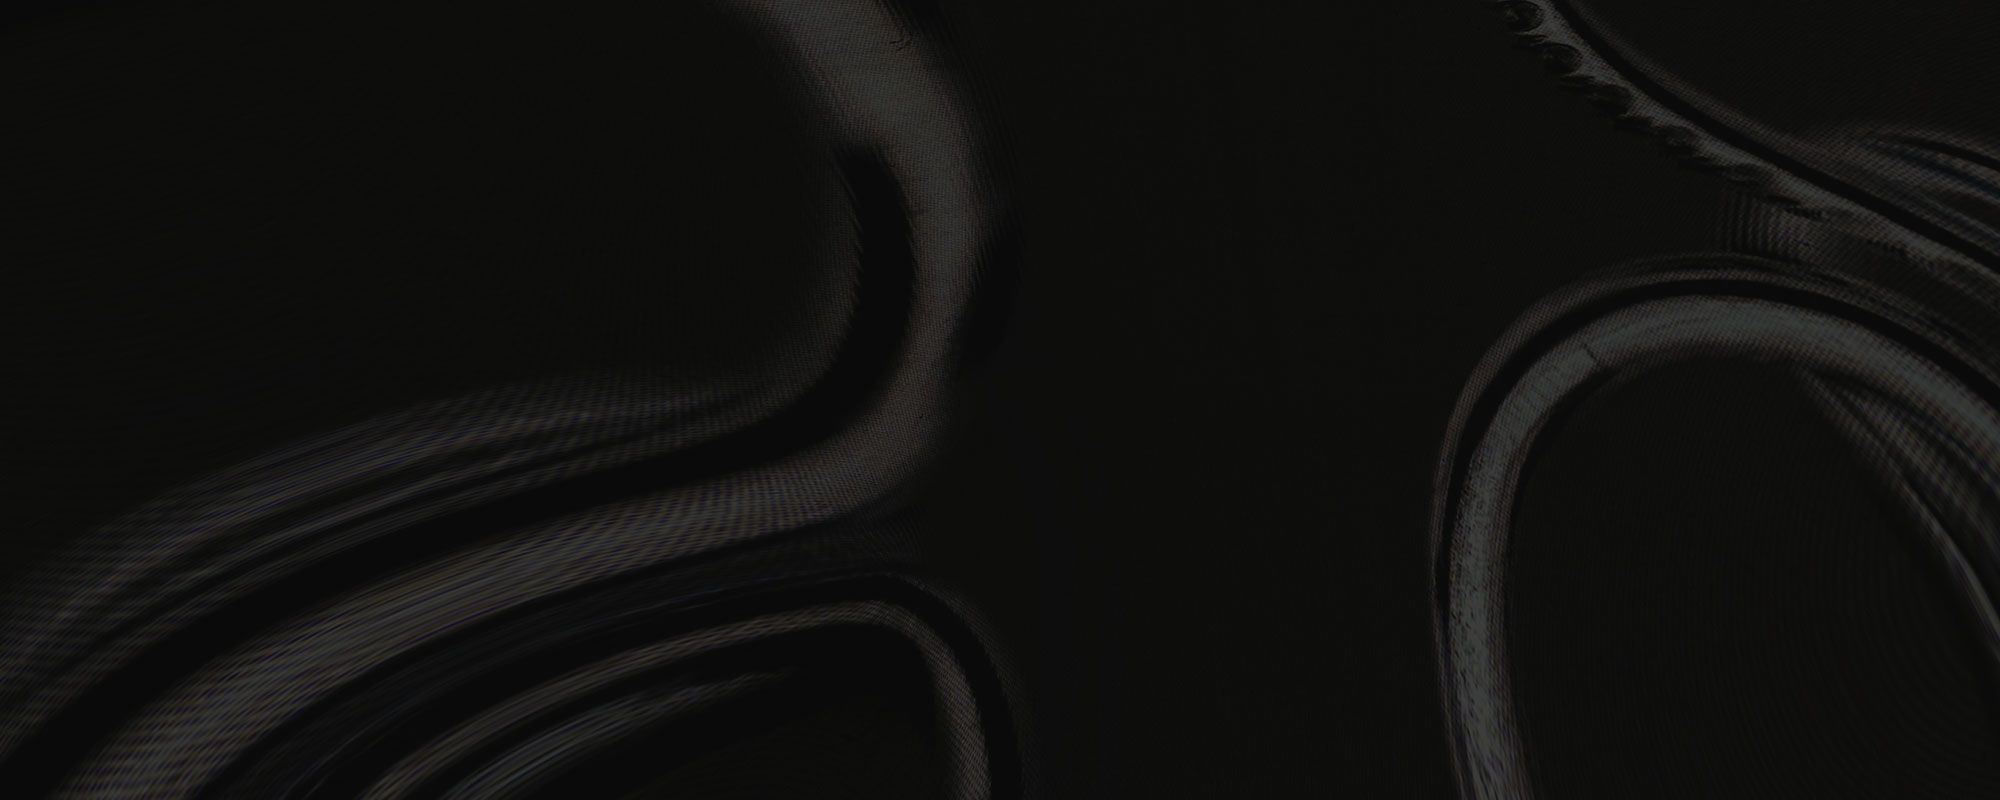 Spinelli Kilcollin warped rings on inverted dark background